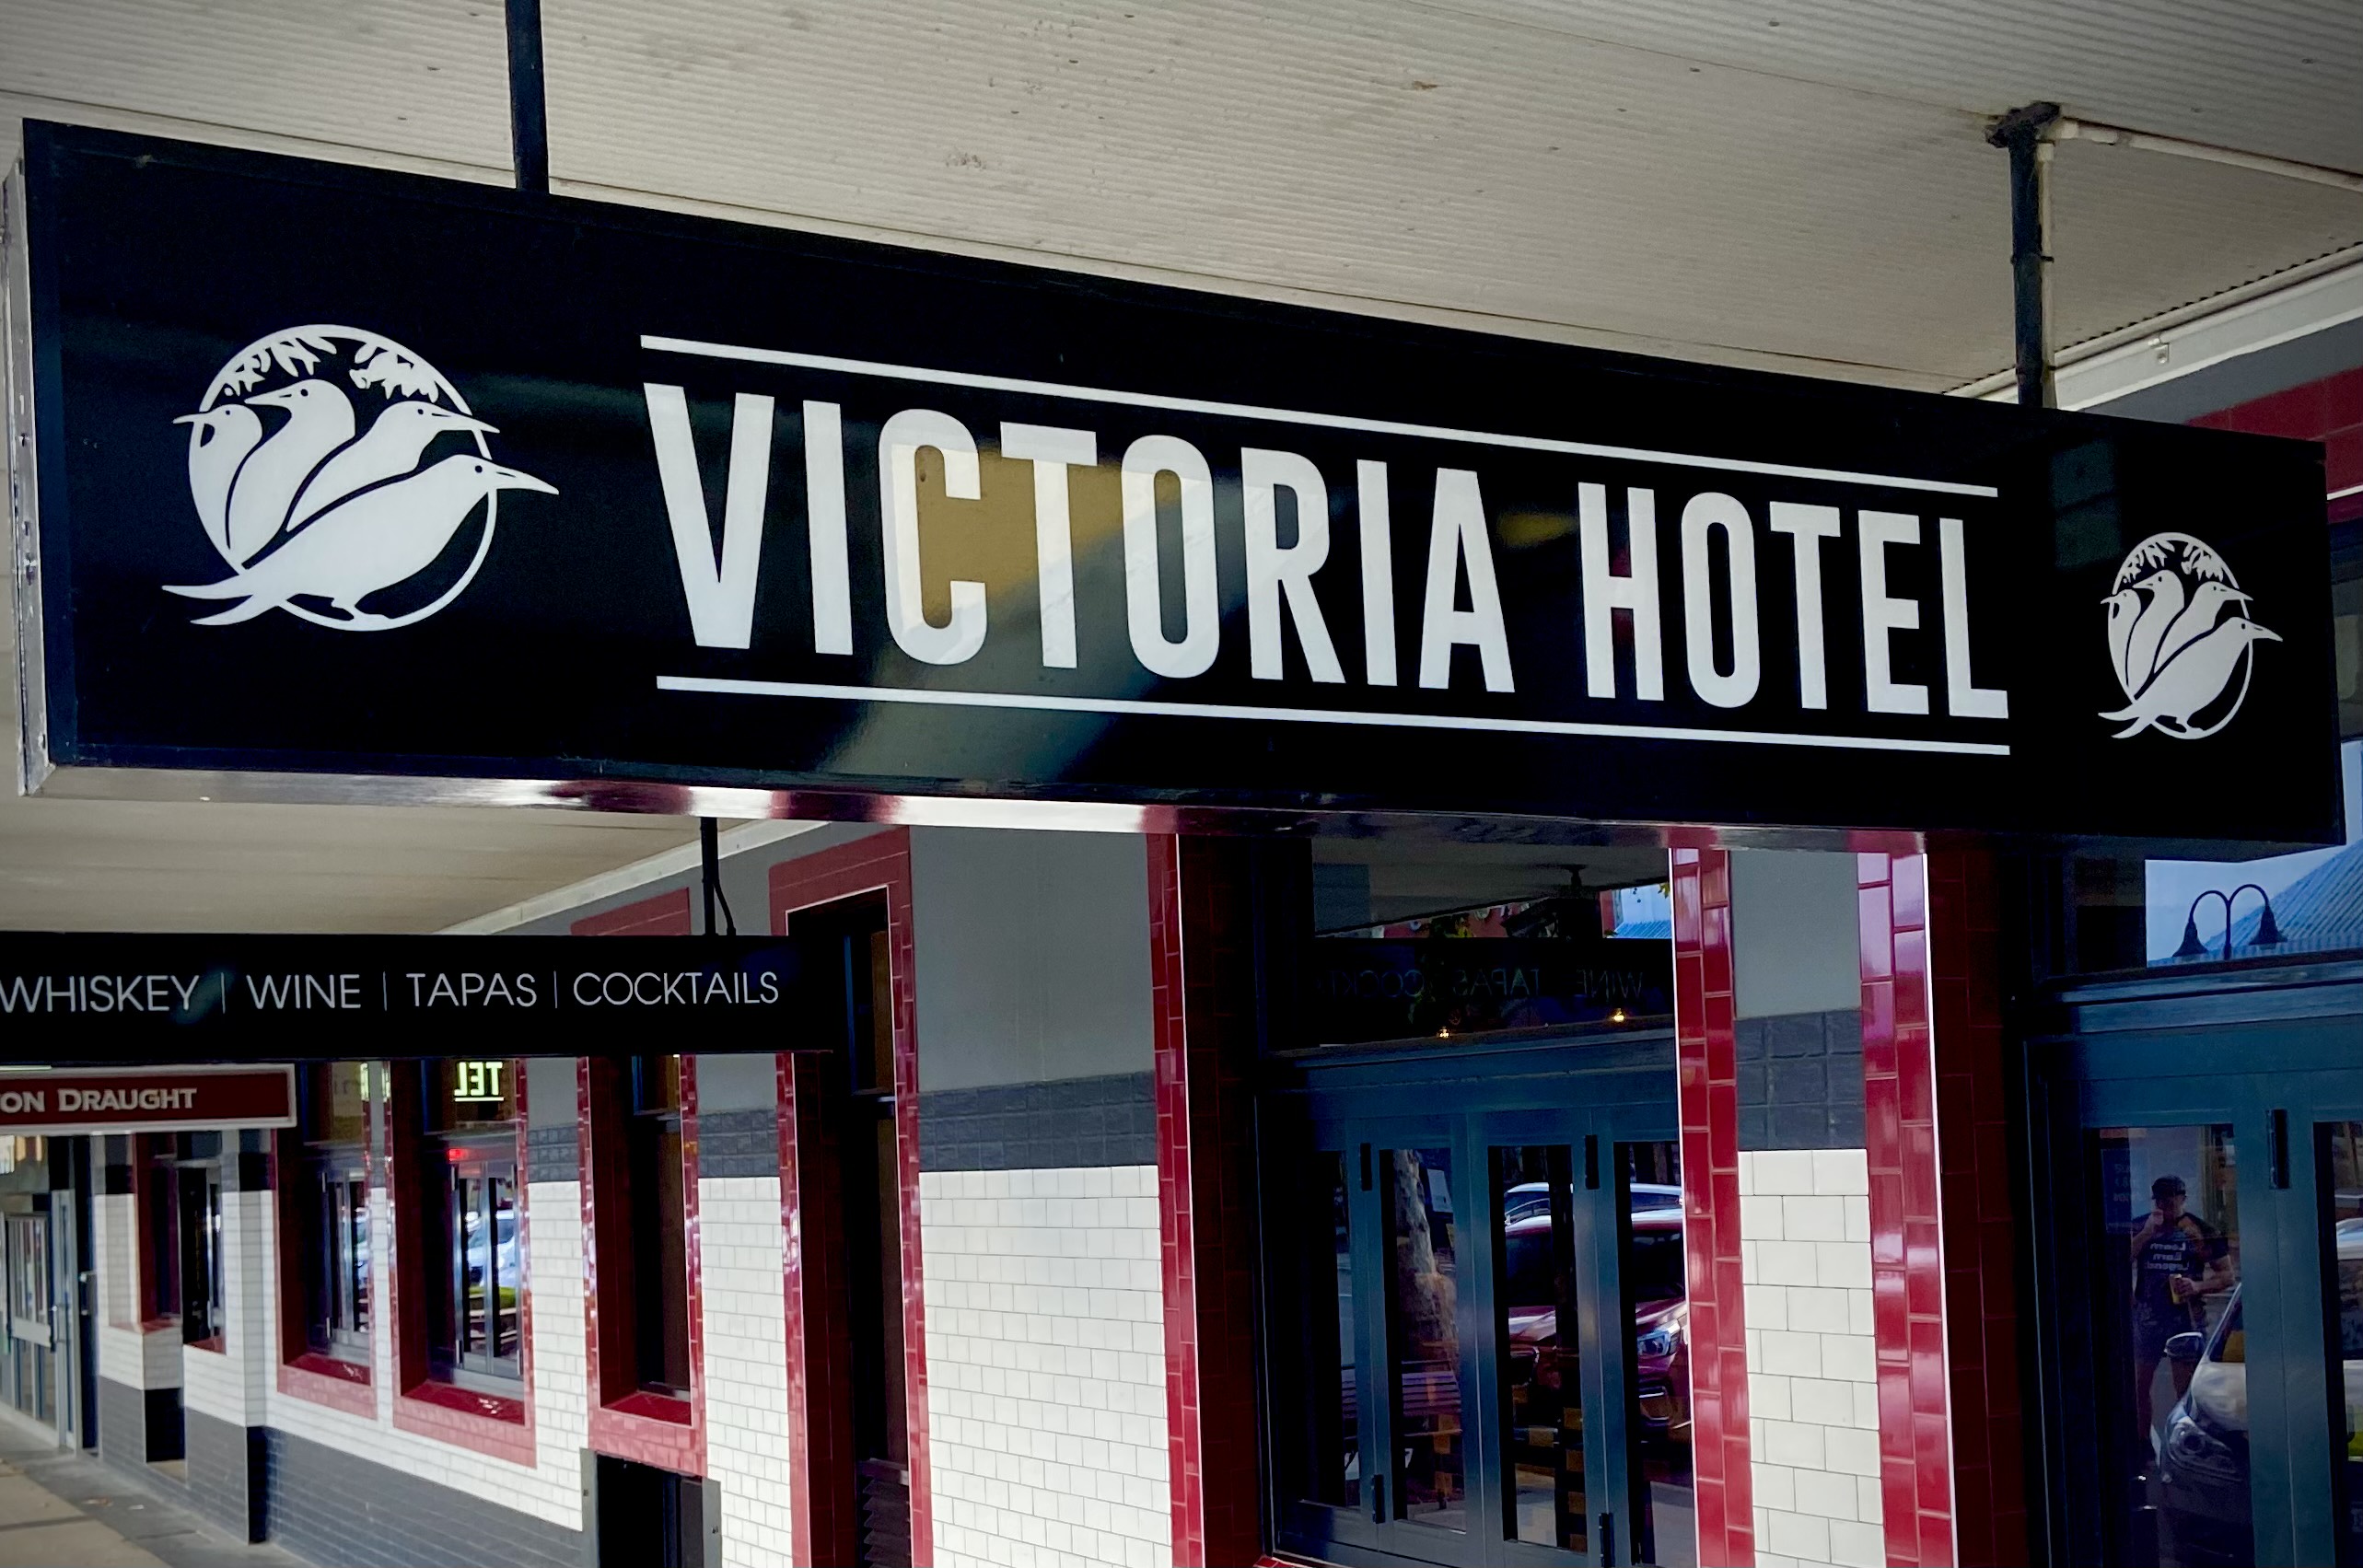 Victoria Hotal sign